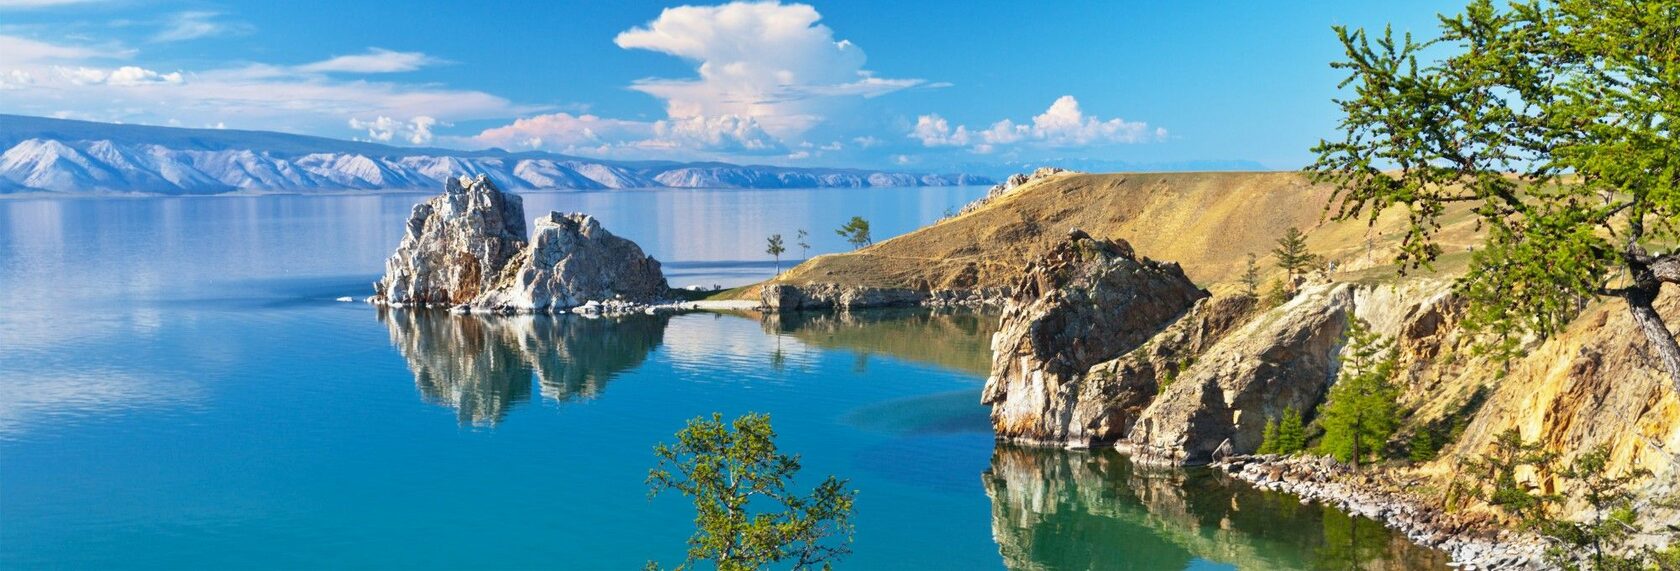 Озеро байайкал панорама